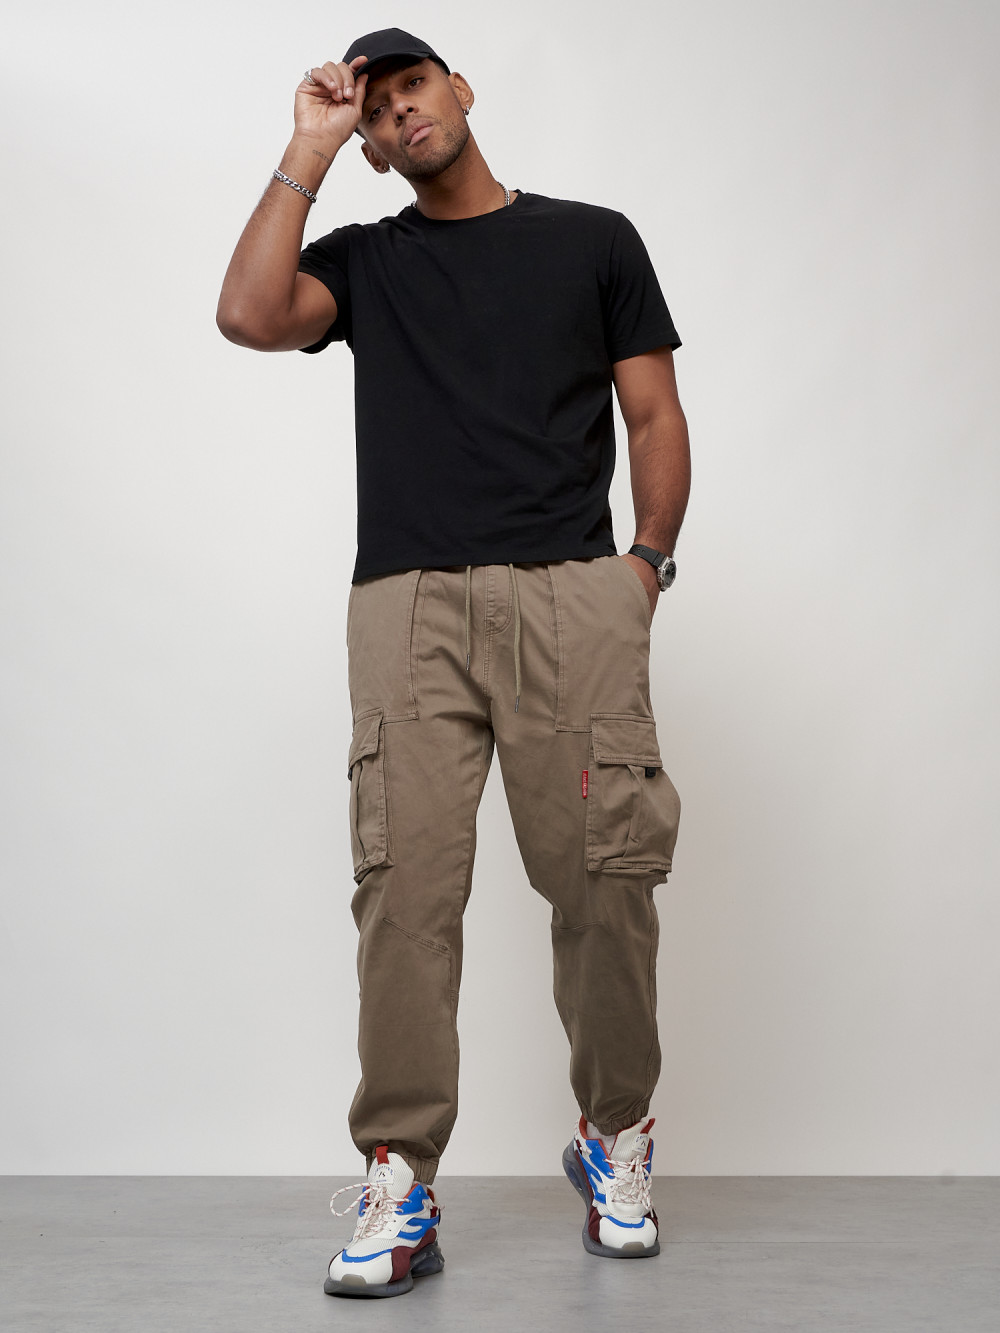 Джинсы карго мужские с накладными карманами бежевого цвета 2423B